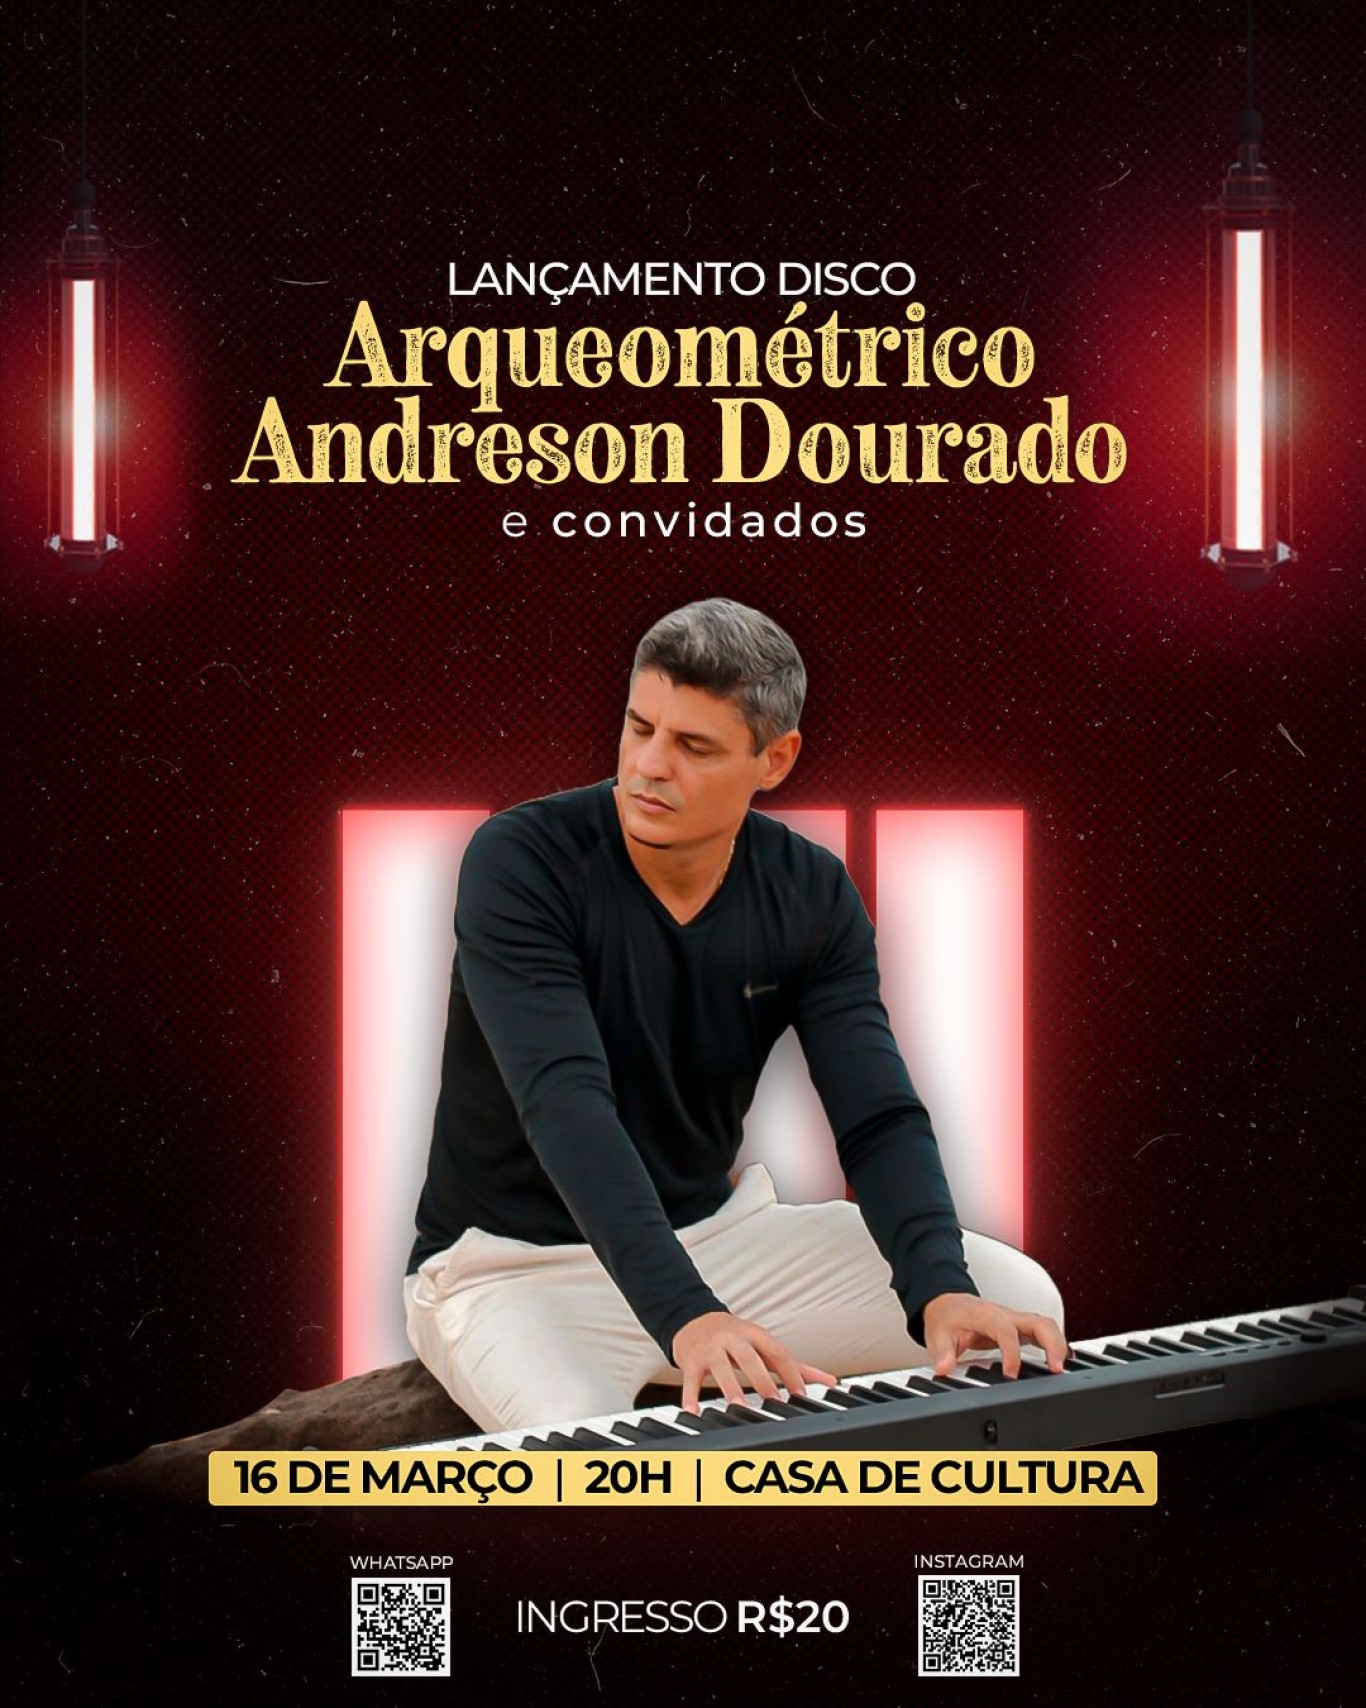 Casa da Cultura recebe o lançamento do disco Arqueométrico Andreson Dourado e convidados 